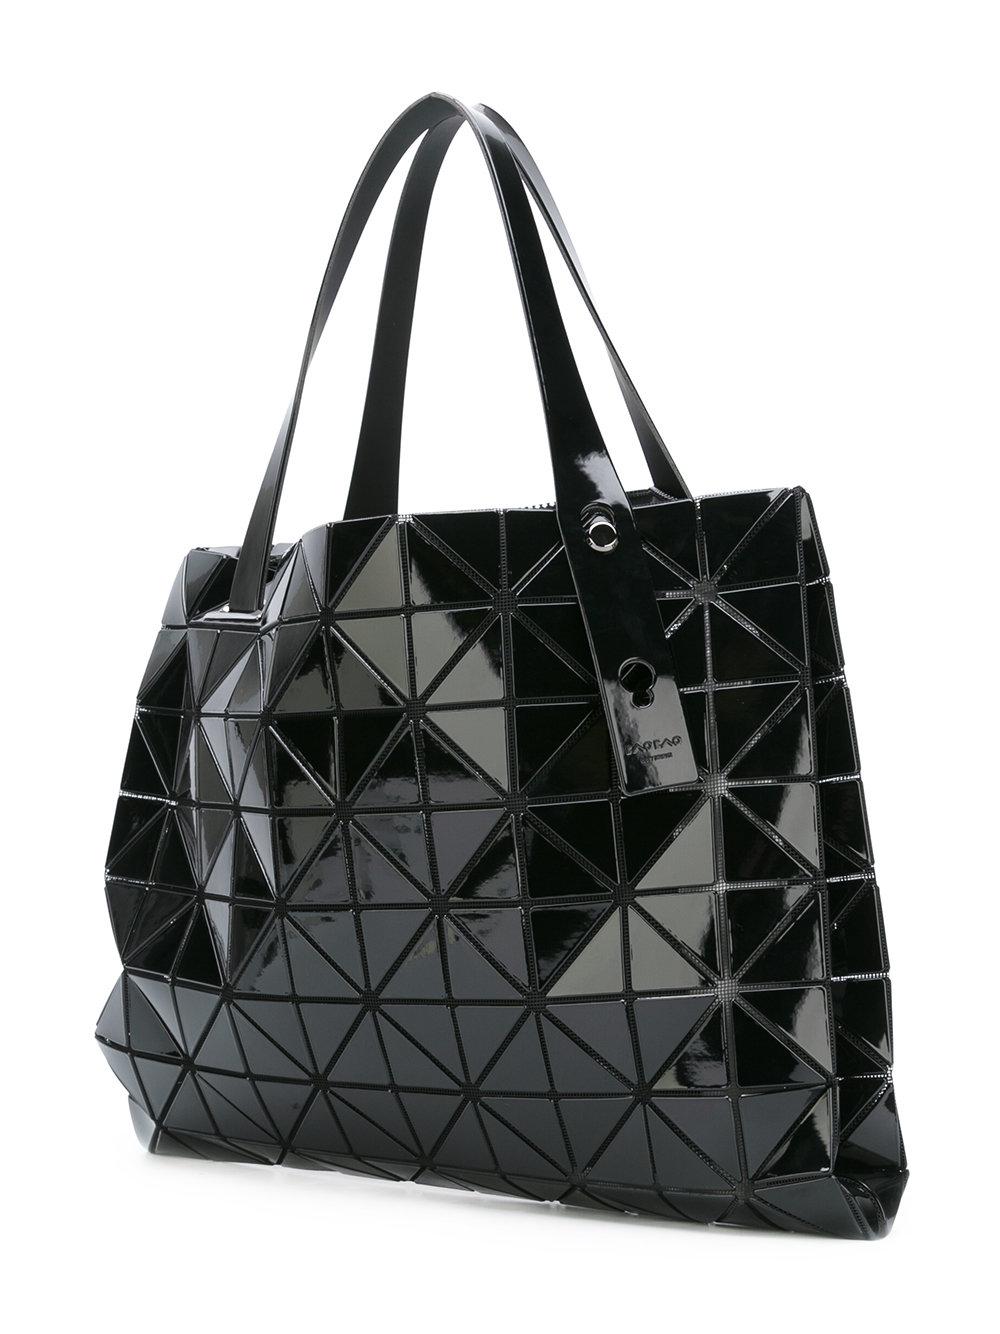 Issey Miyake Prism Tote Bag in Black - Lyst